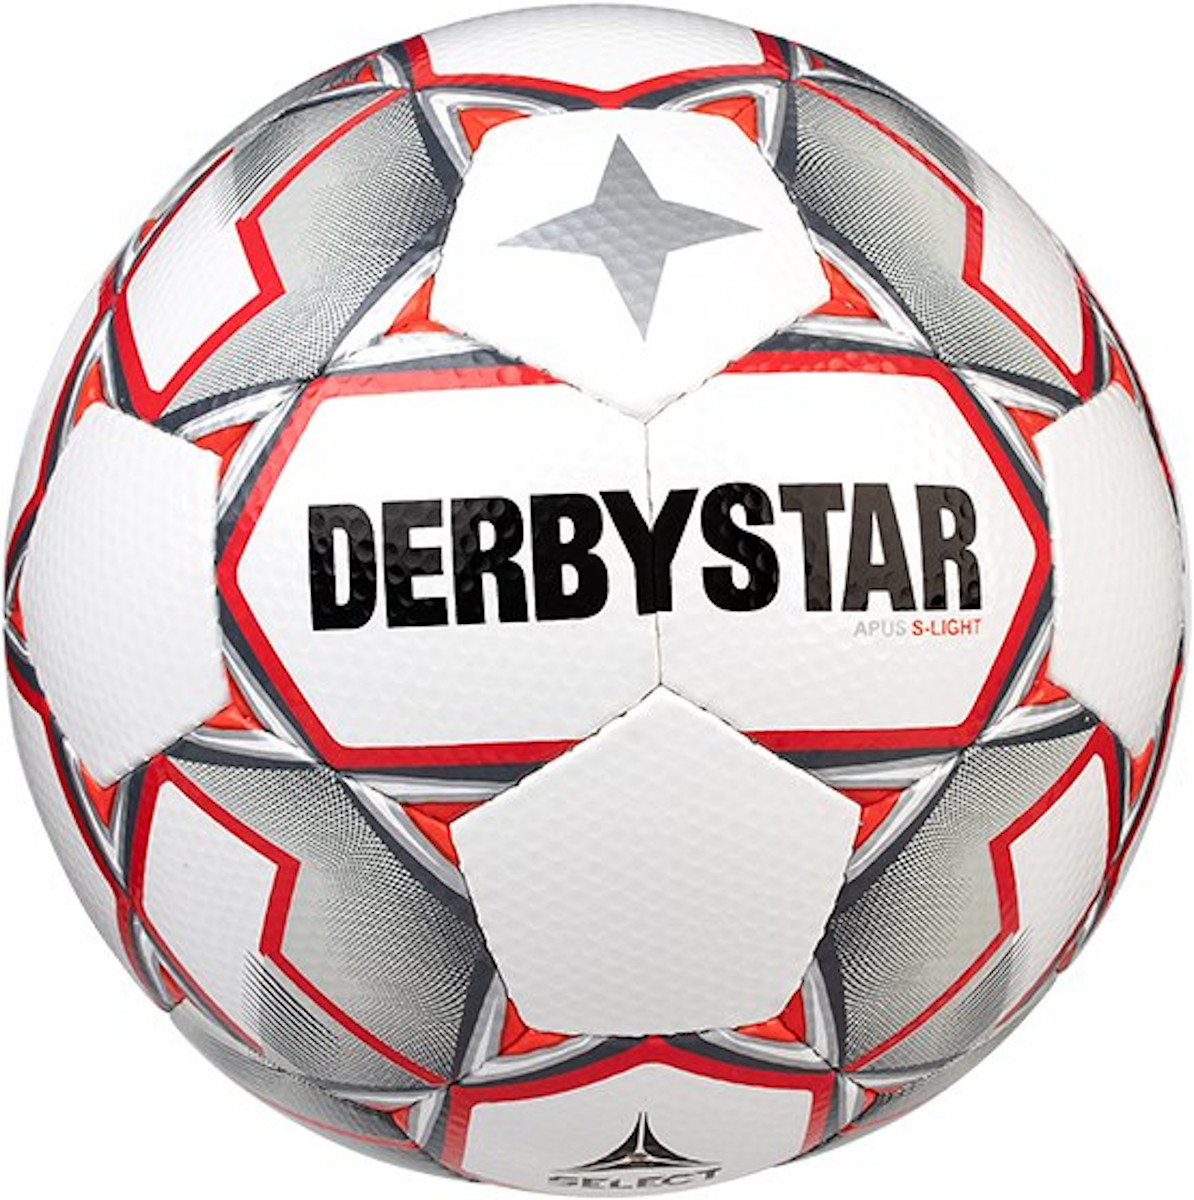 Boll Derbystar Apus S-Light v20 290 grams Lightball